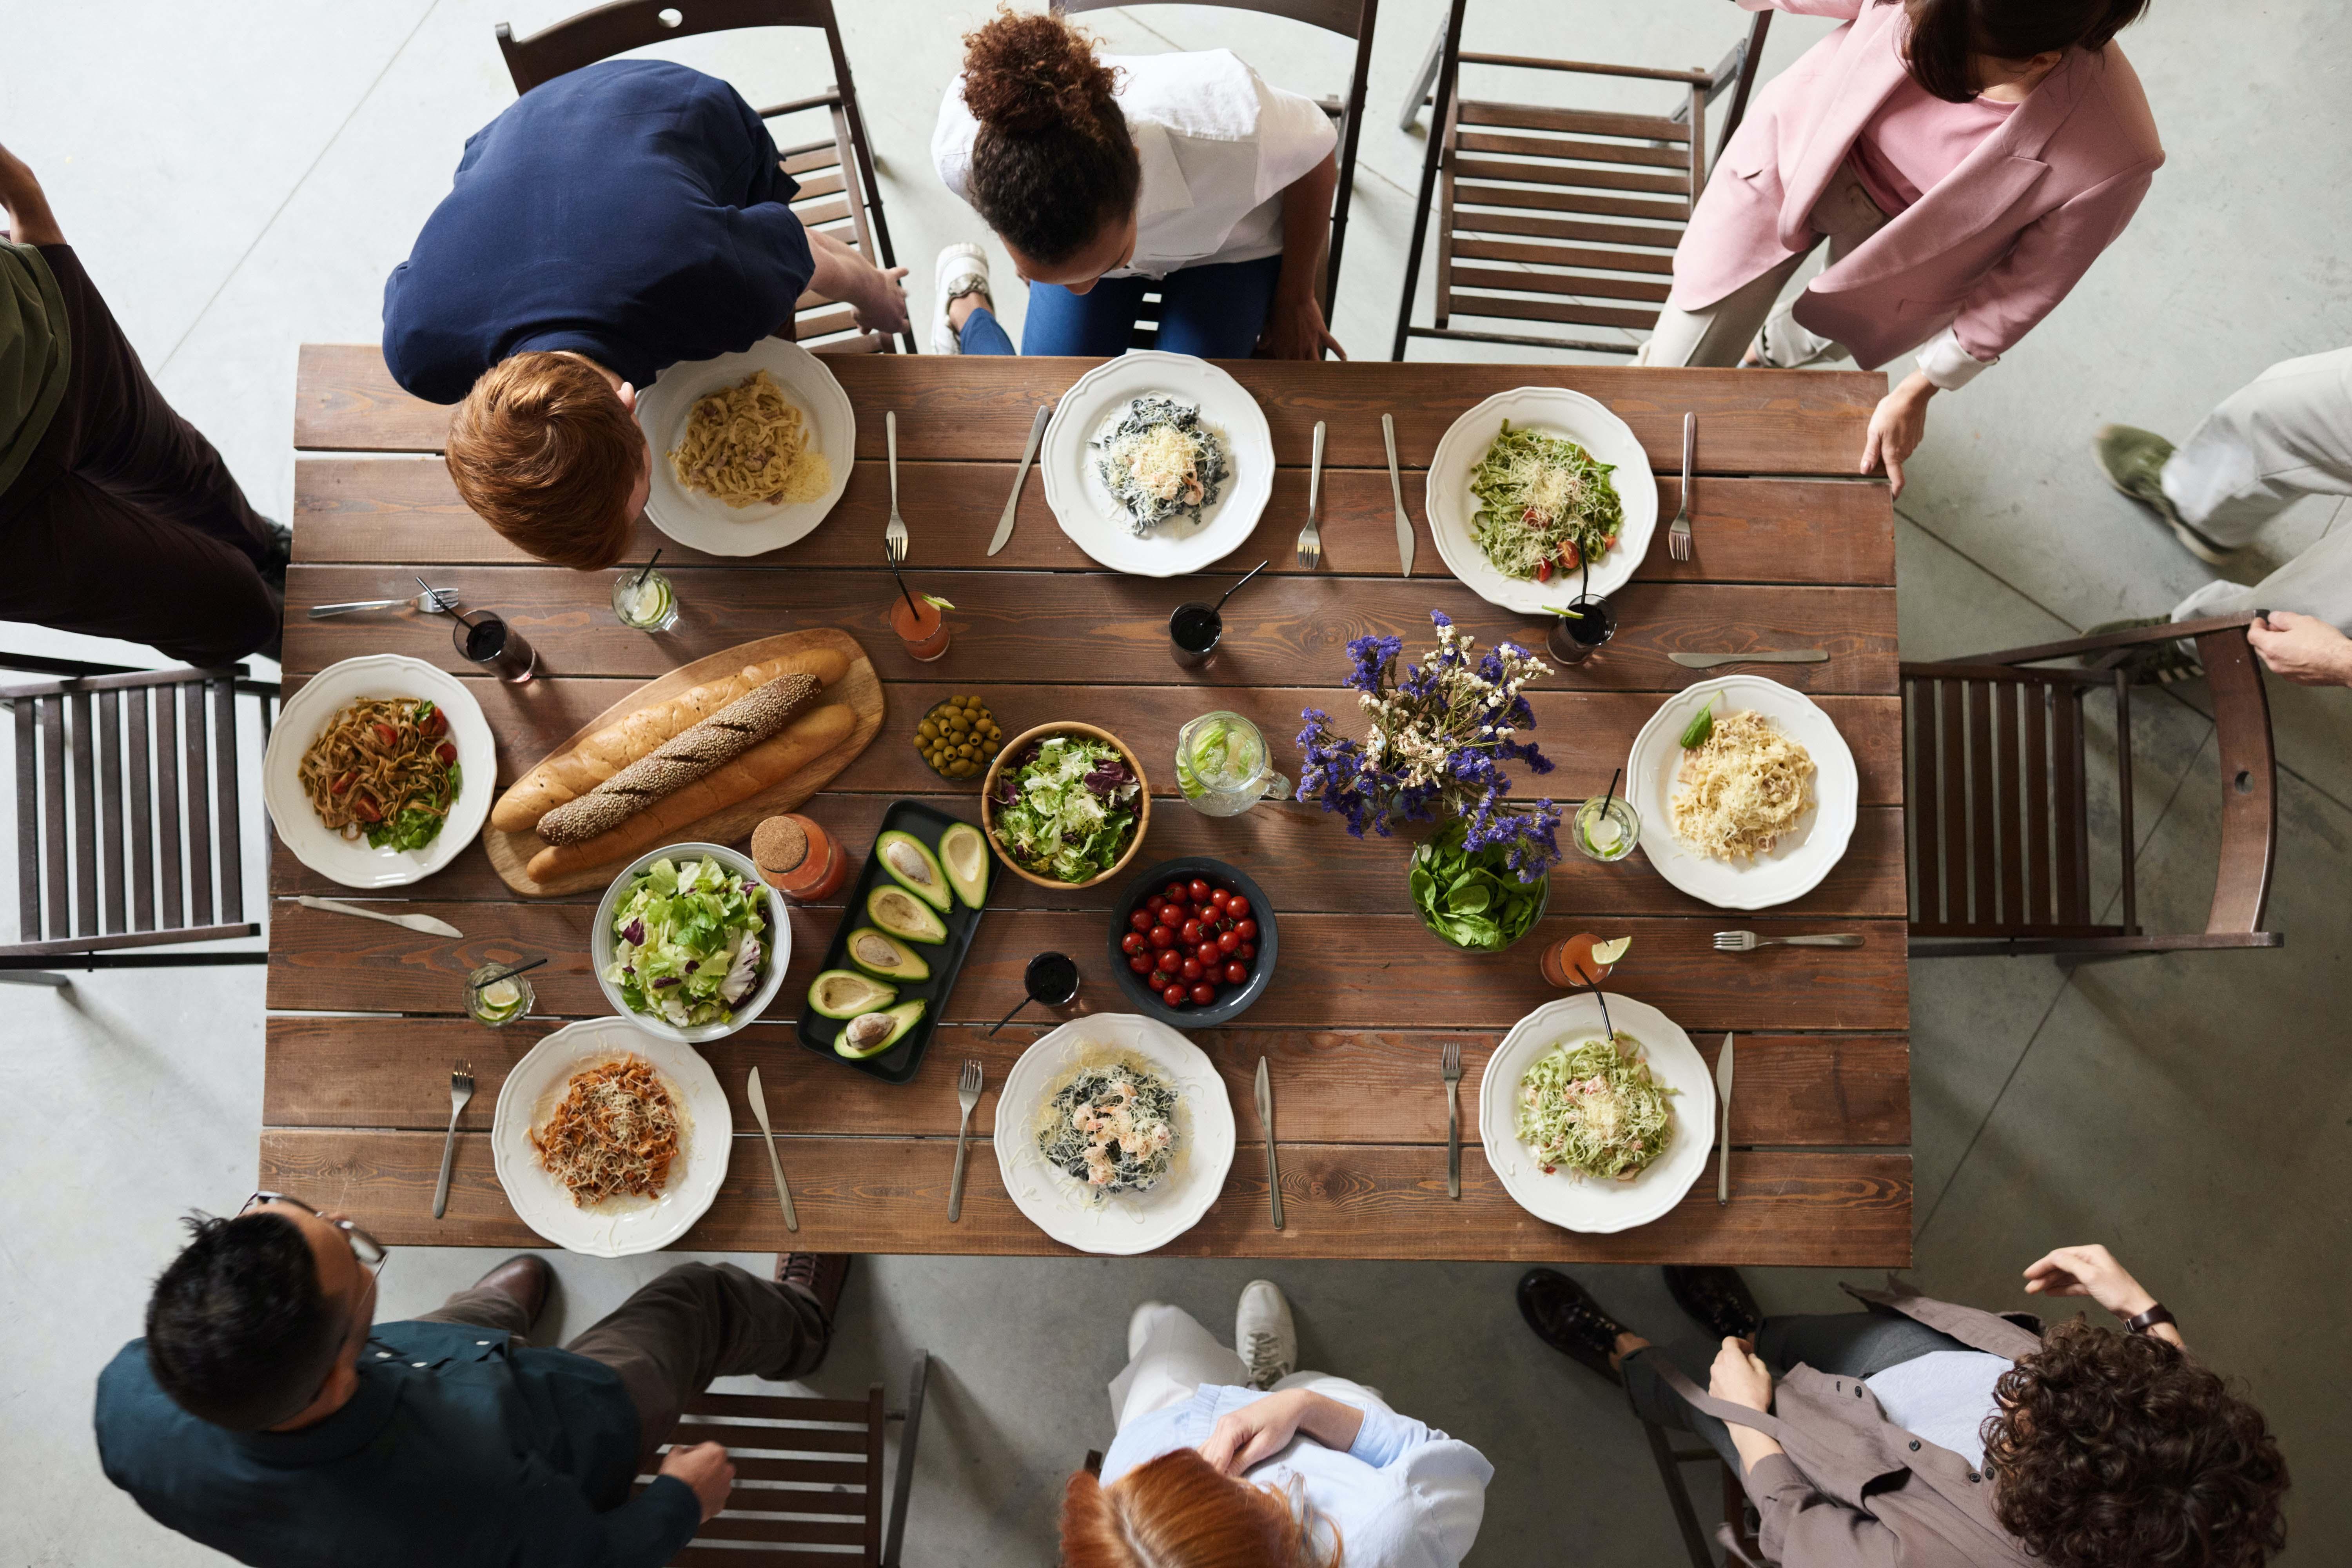 Thuis eten met gasten tijdens de coronacrisis? Deze tips helpen op